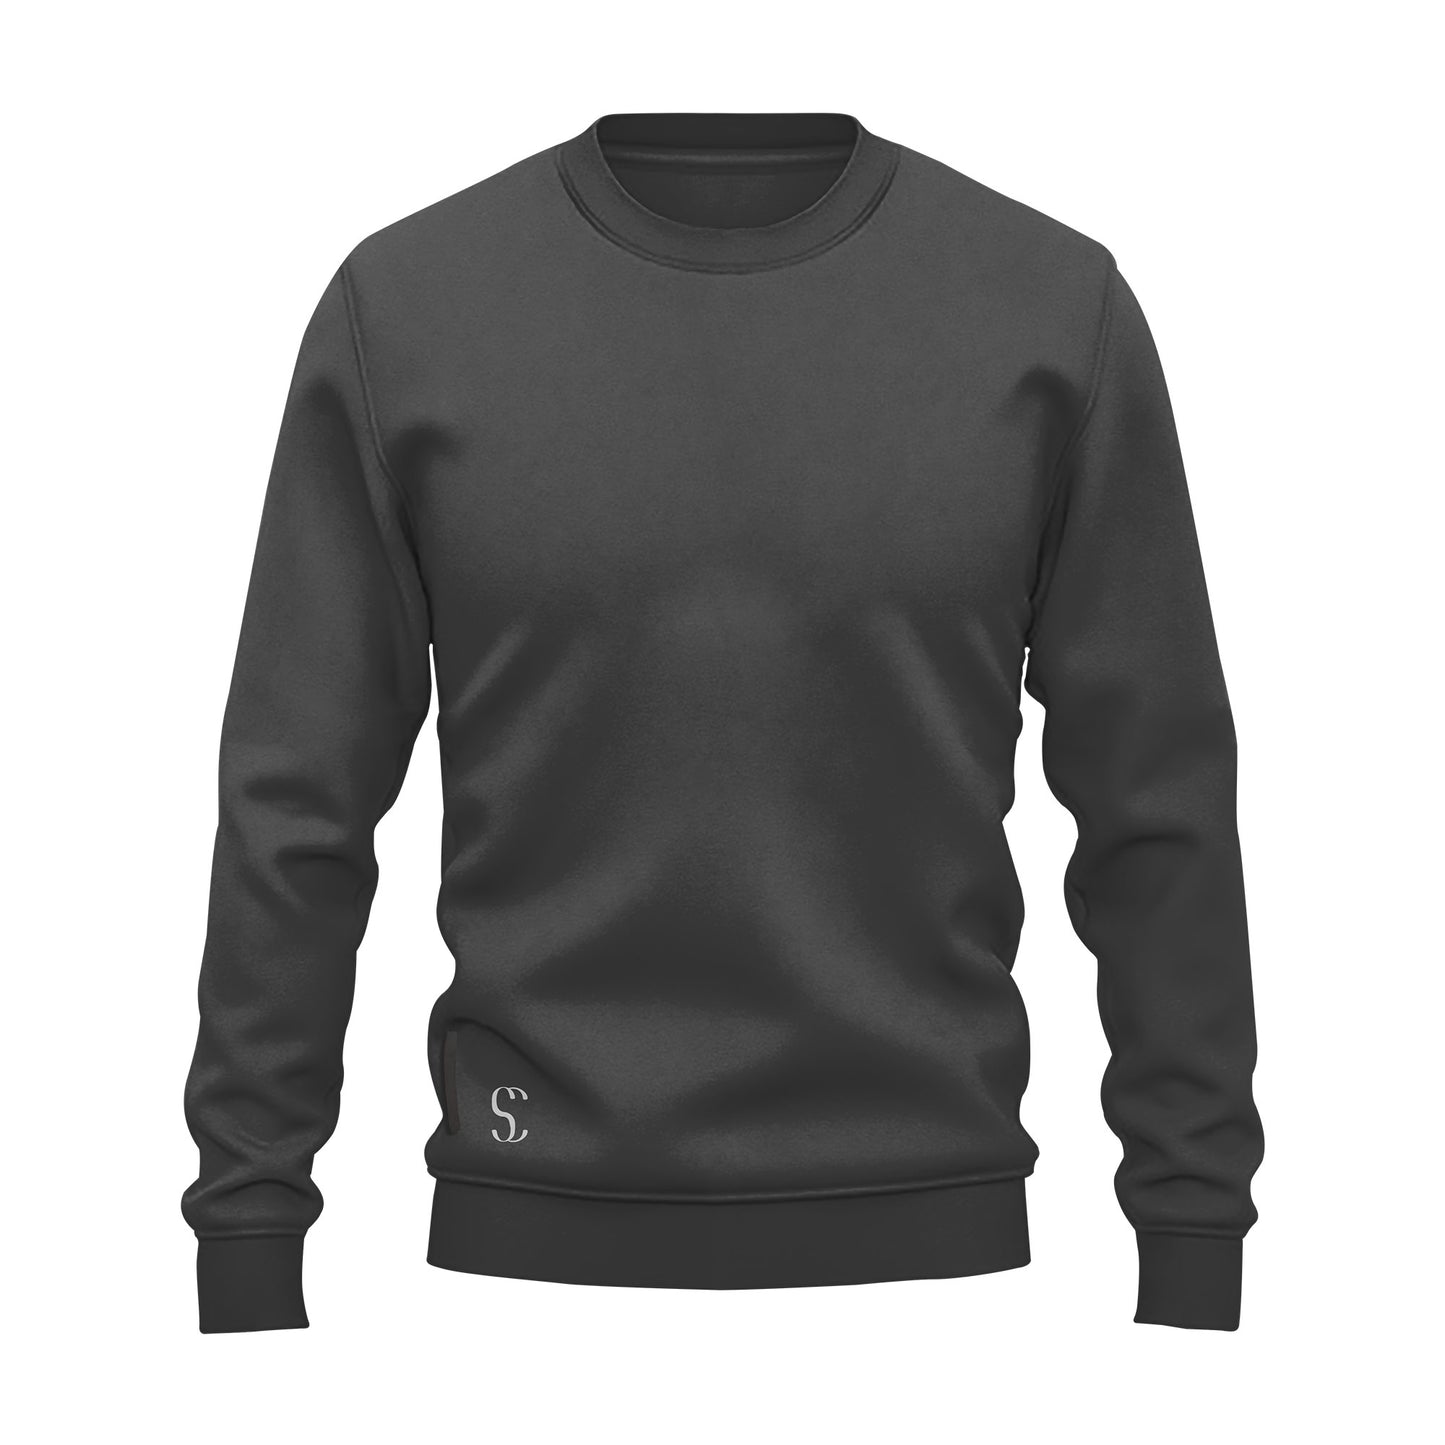 Men's Black Crewneck Fleece Sweatshirt